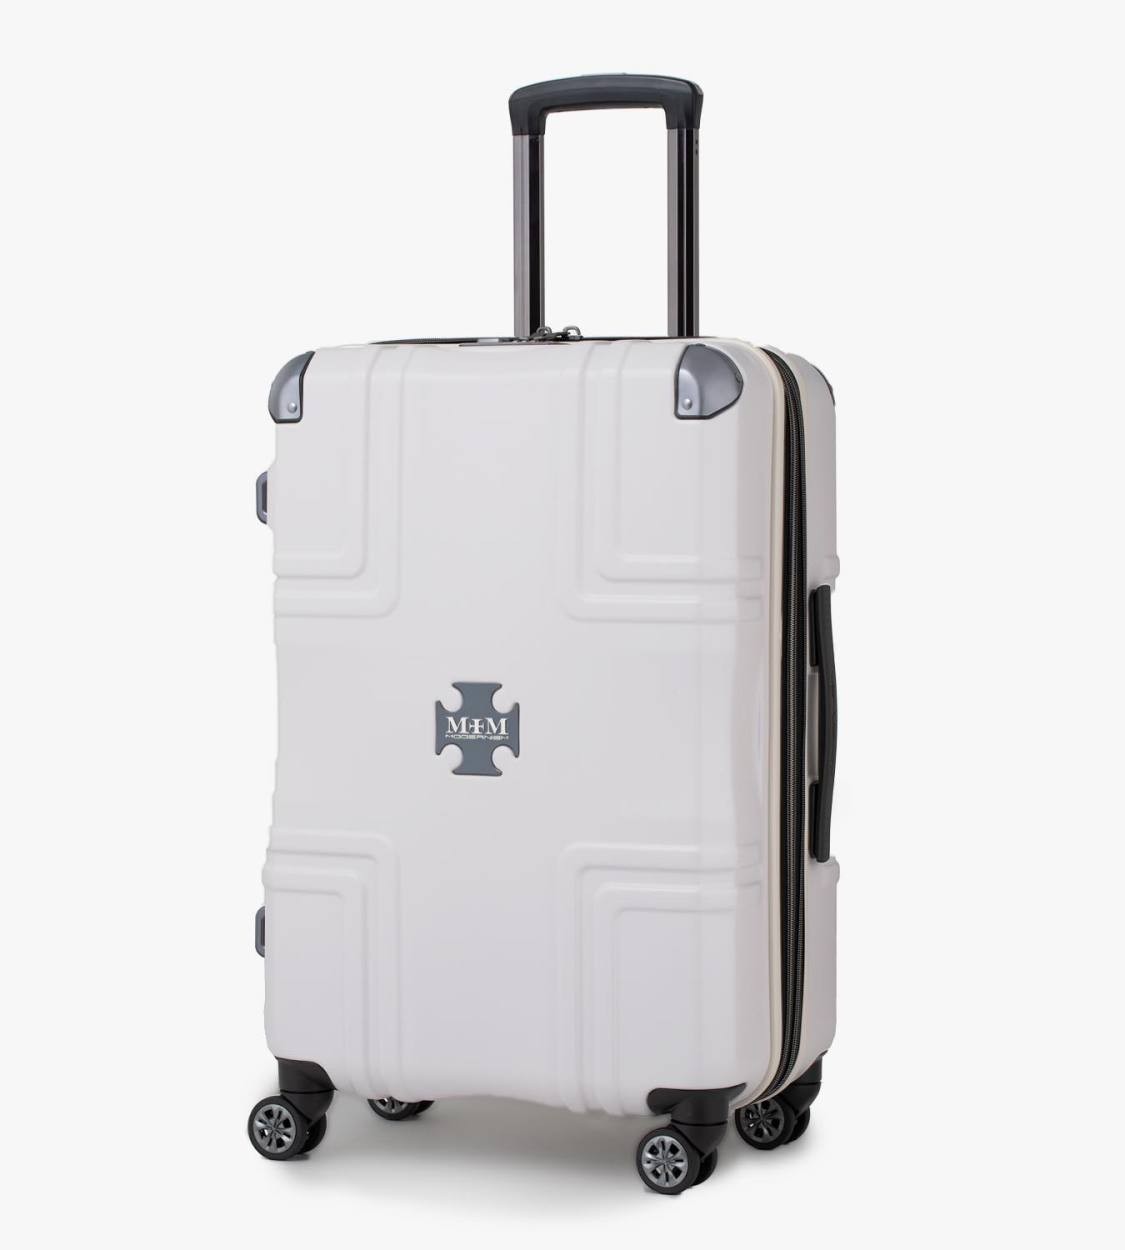 スーツケース キャリーケース キャリーバッグ トランク 小型 軽量 S 